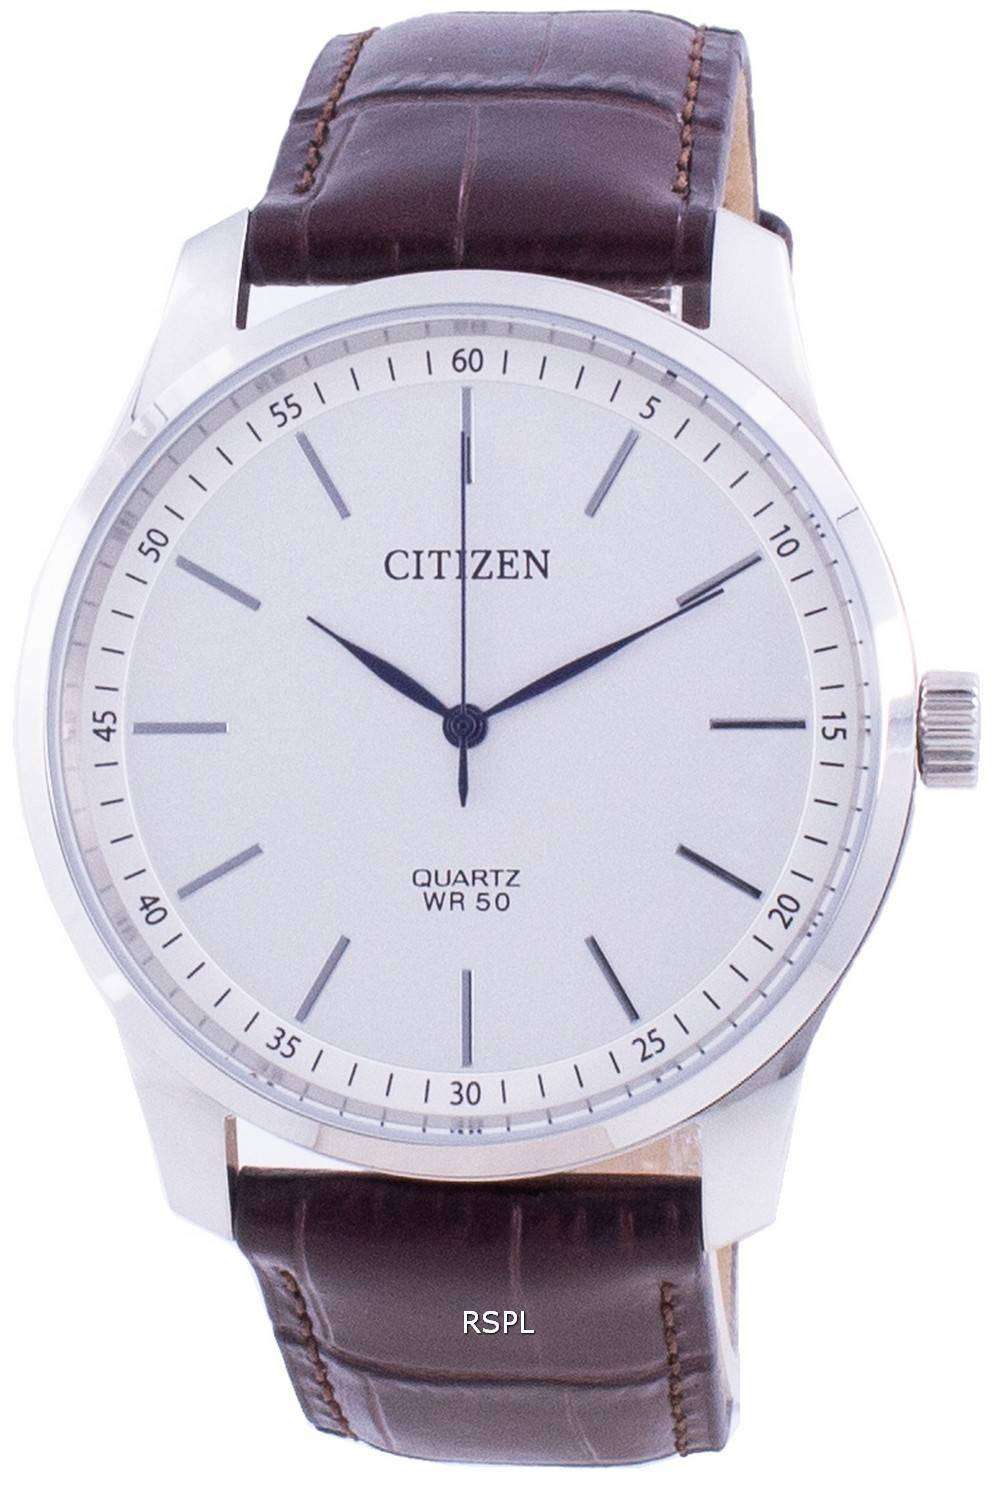 Citizen BH5000-59A Mens Quartz Watch Steel White Dial 官製 